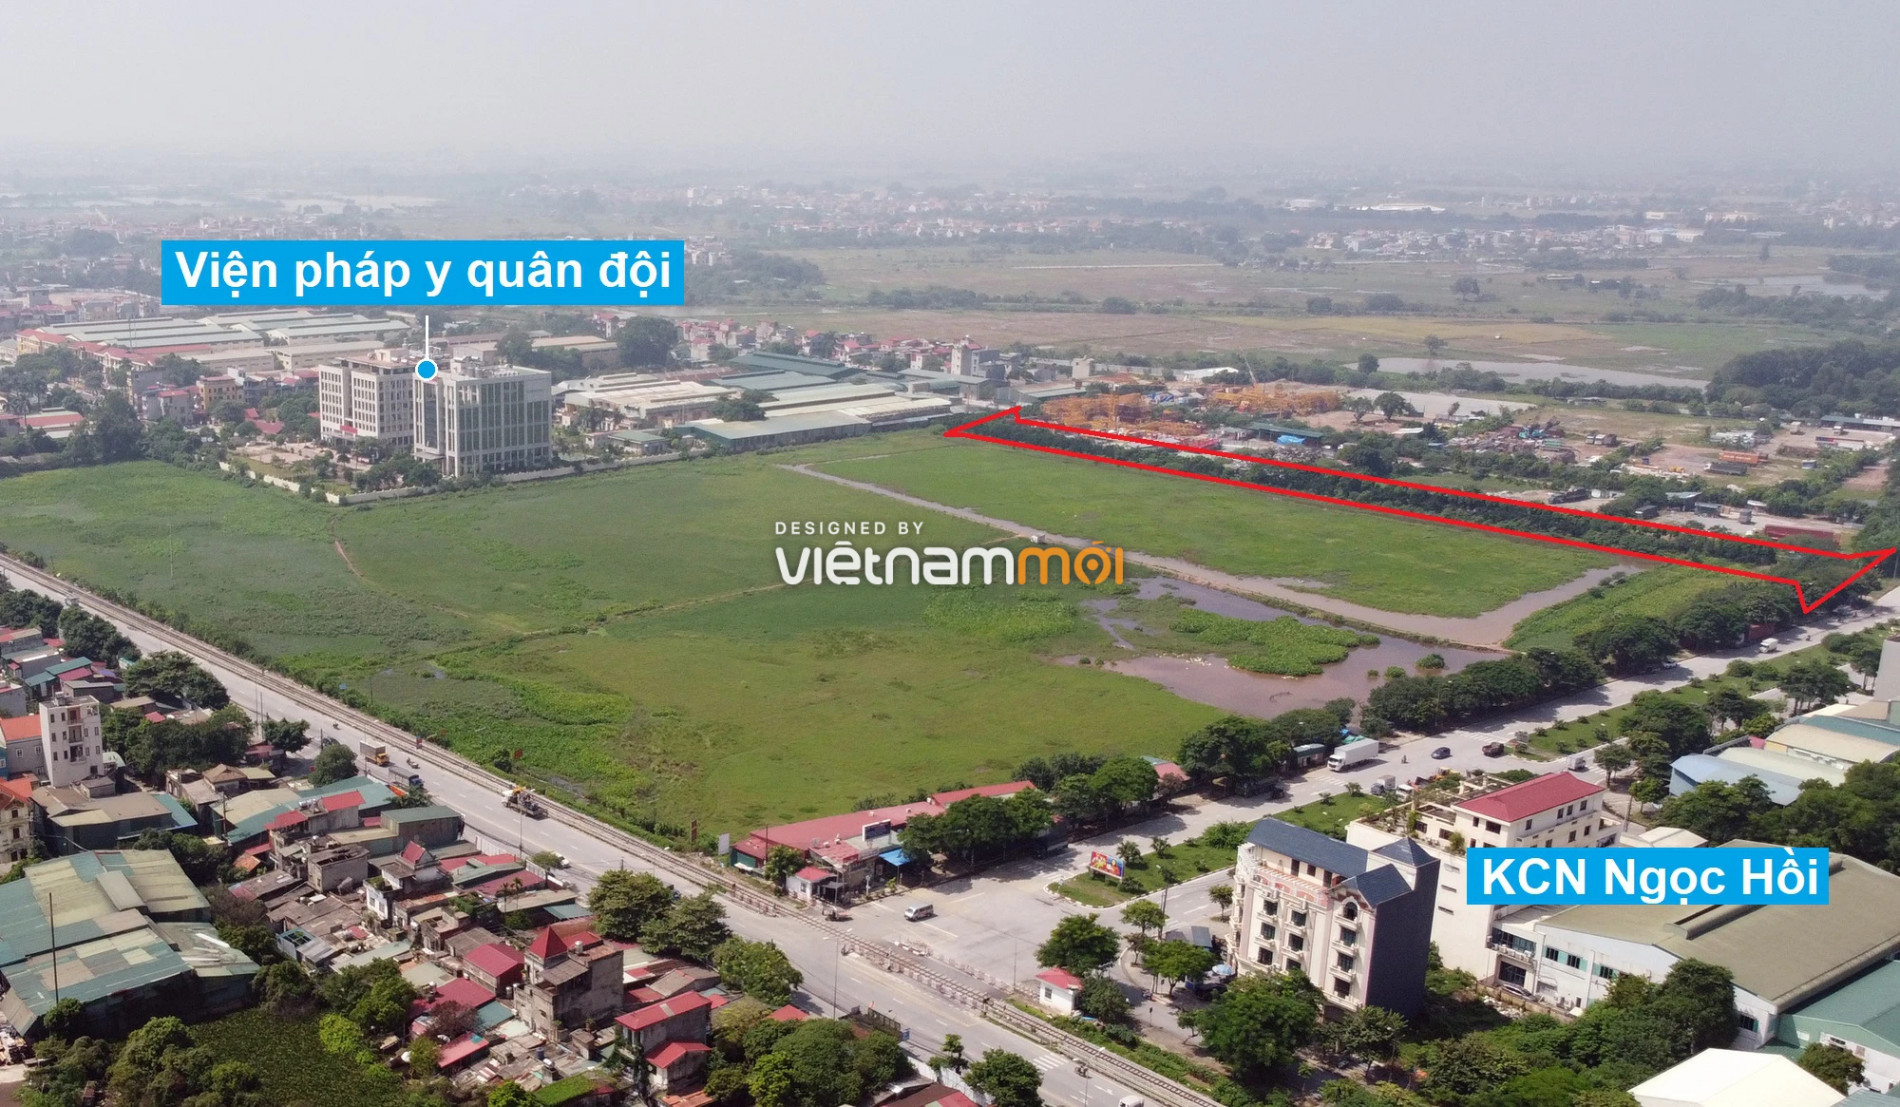 Những khu đất sắp thu hồi để mở đường ở xã Liên Ninh, Thanh Trì, Hà Nội (phần 4) - Ảnh 17.